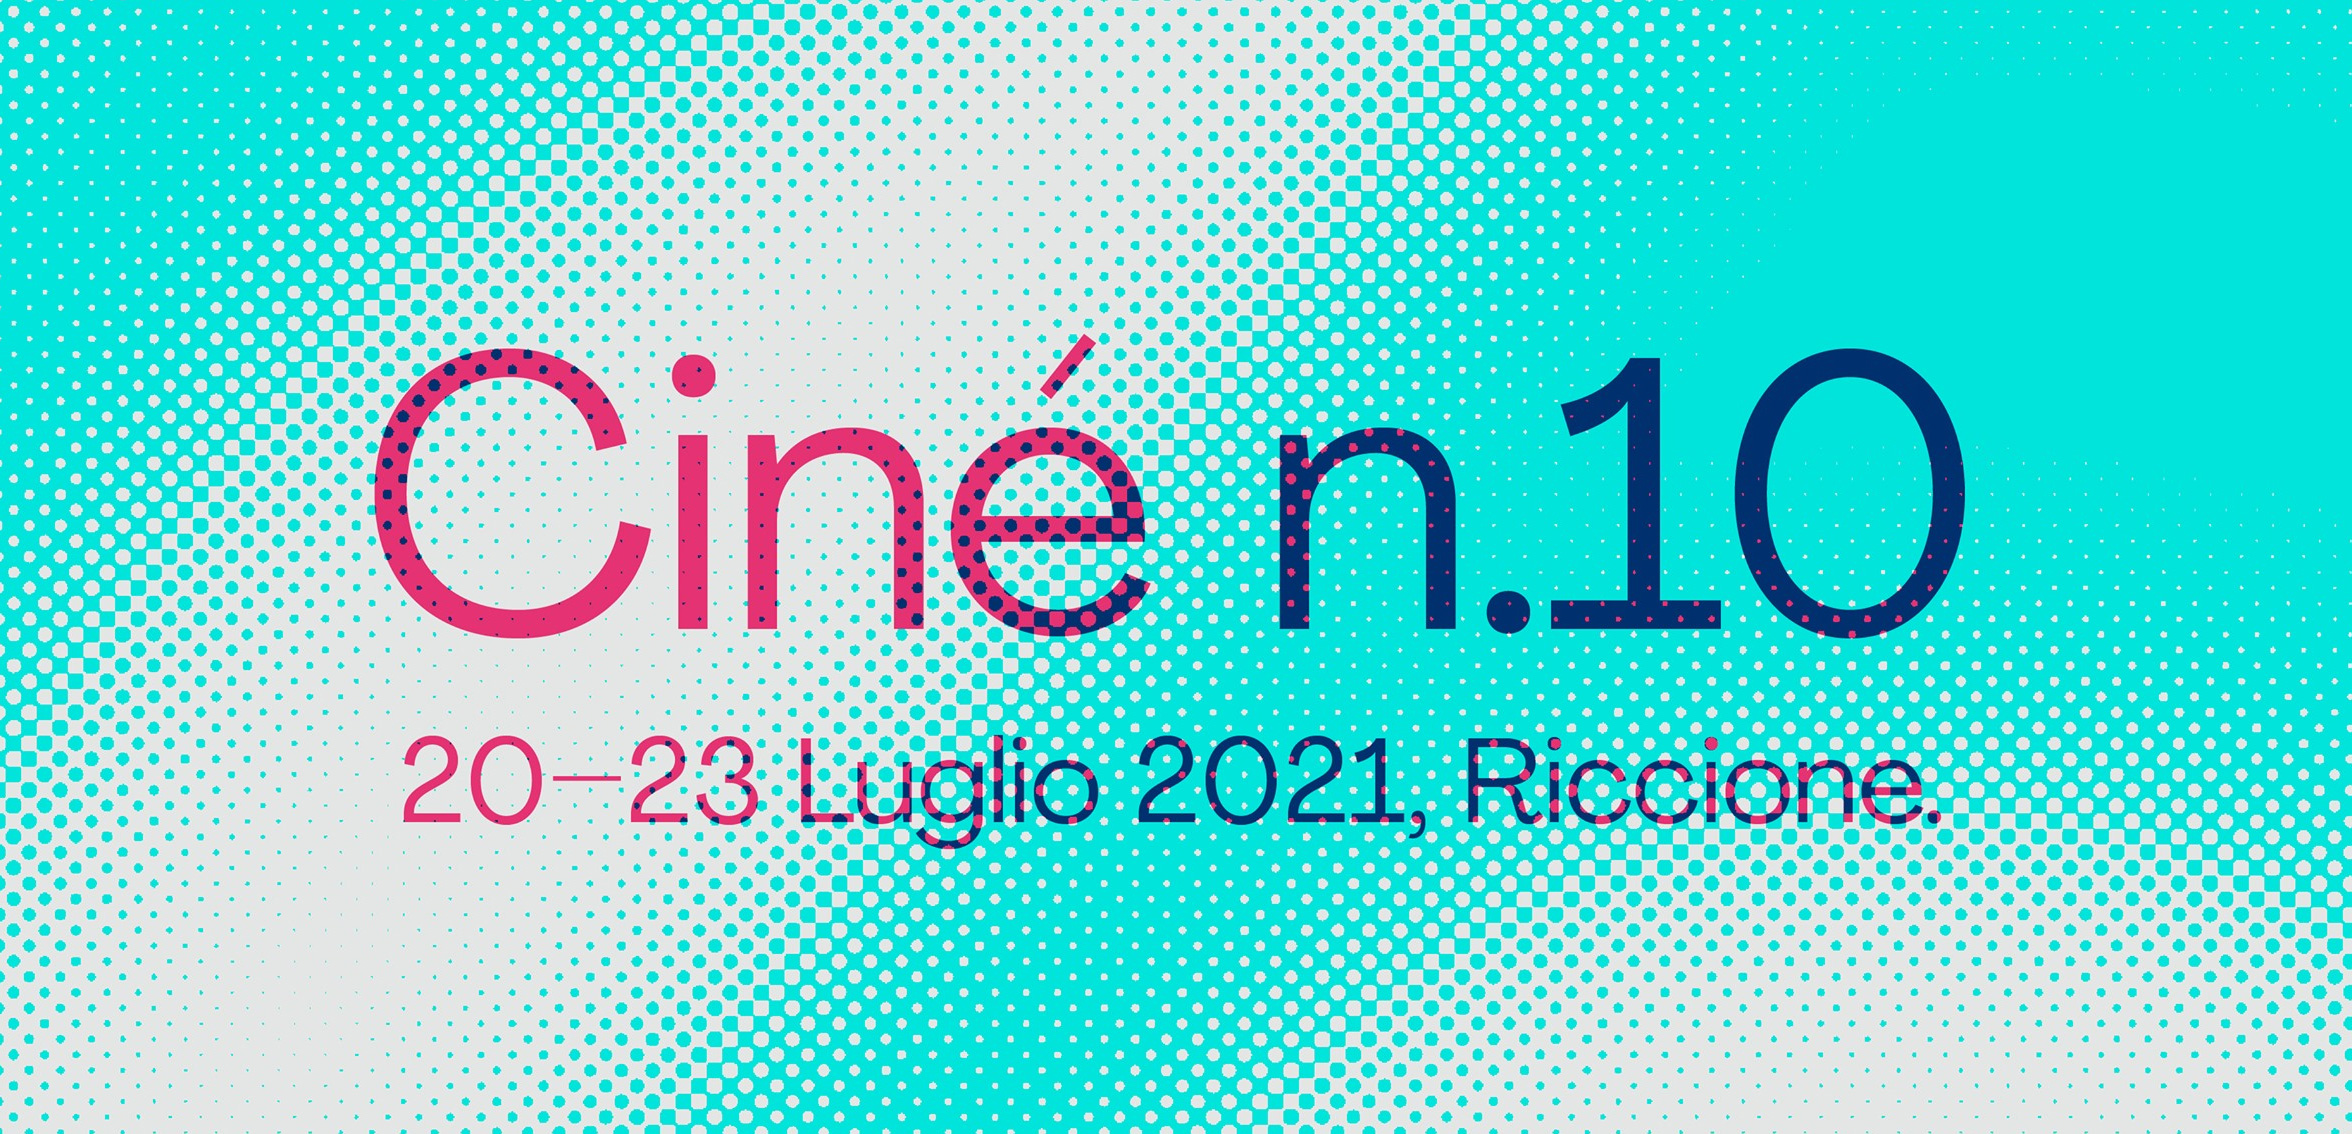 Ciné Riccione 2021